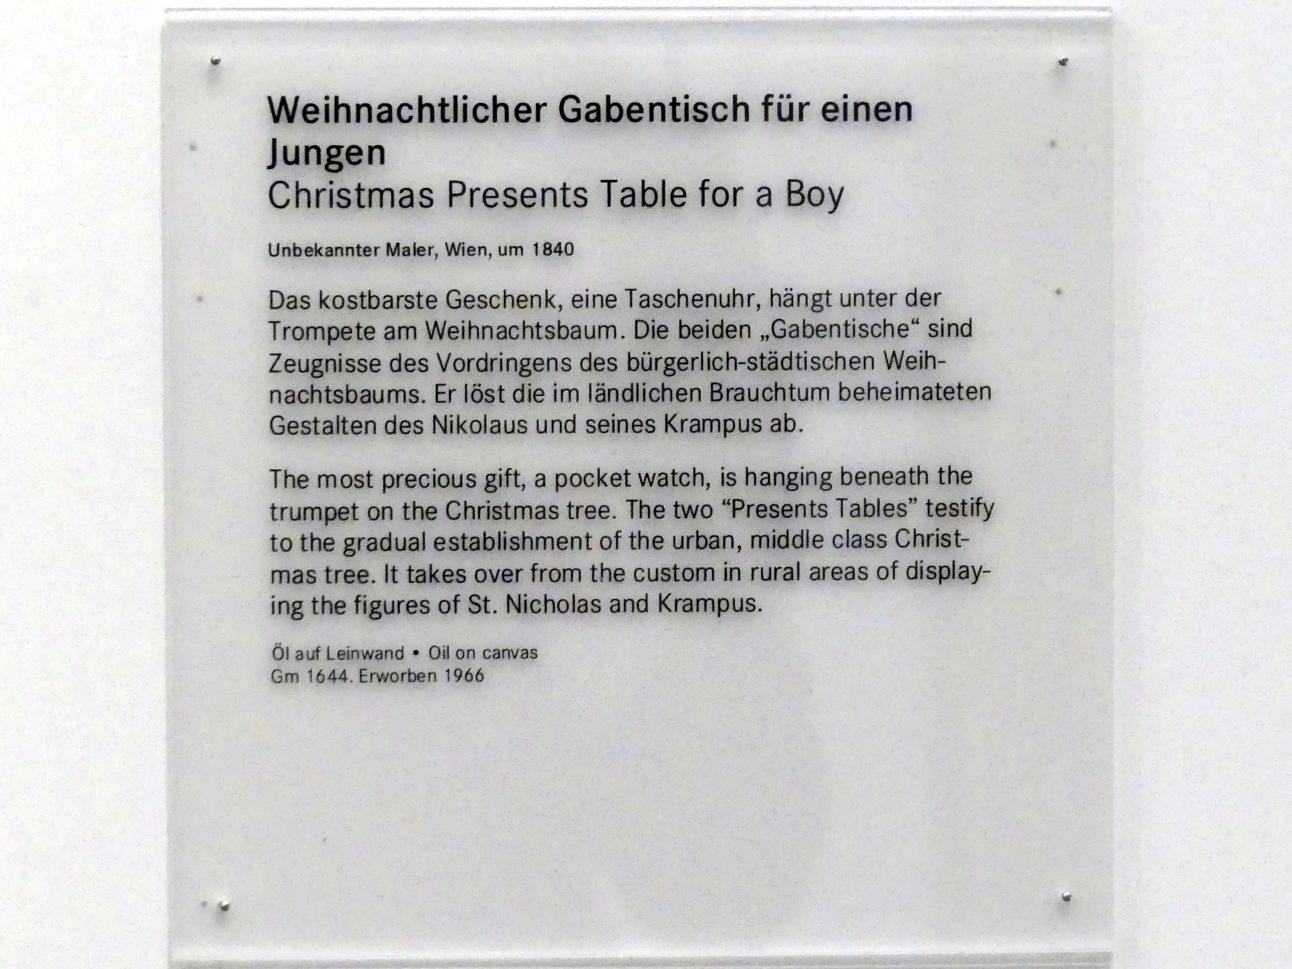 Weihnachtlicher Gabentisch für einen Jungen, Nürnberg, Germanisches Nationalmuseum, 19. Jahrhundert - 13, um 1840, Bild 2/2